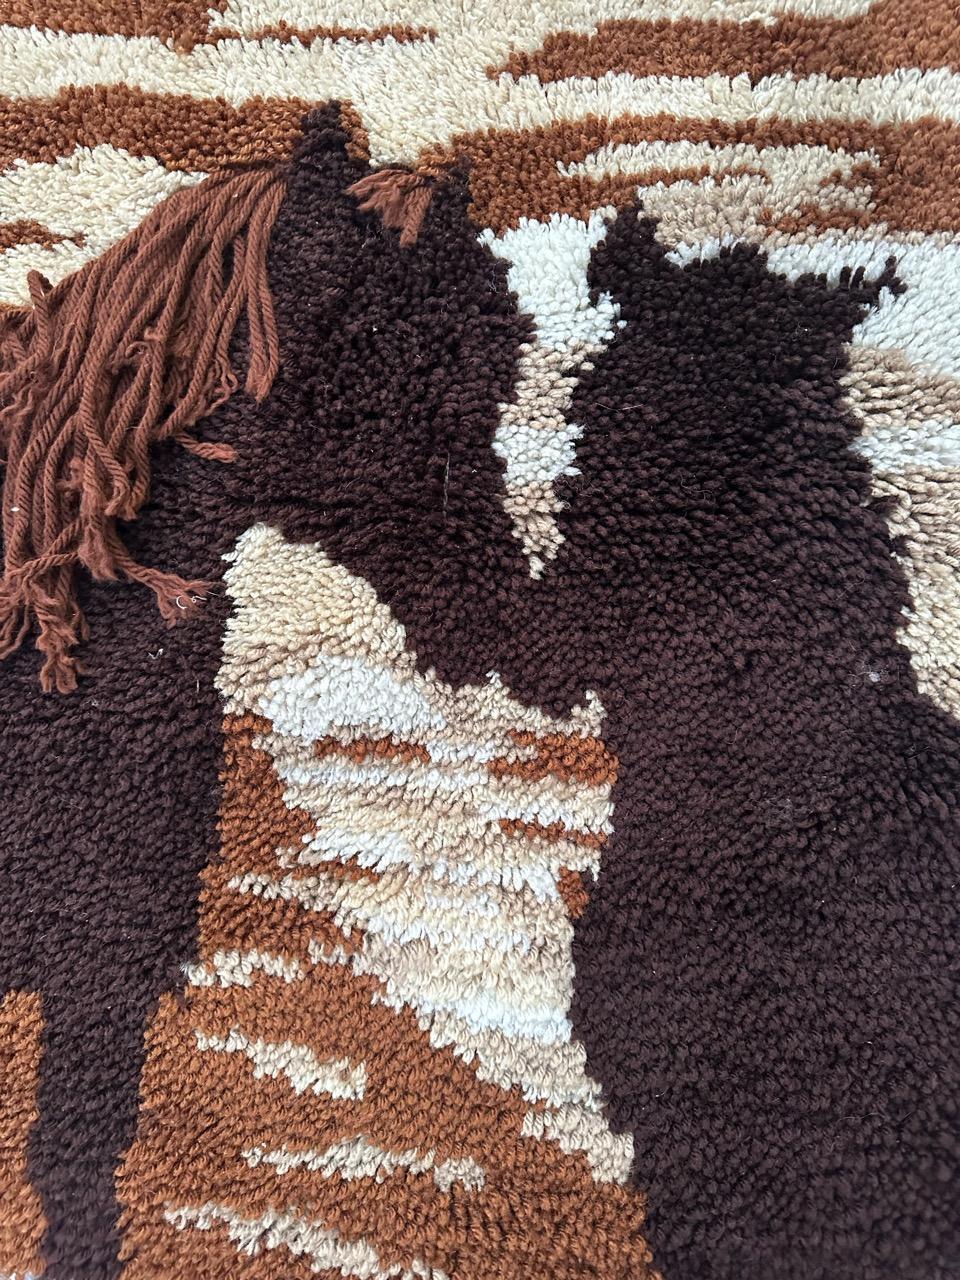 Hübscher handgeknüpfter Wandteppich im Vintage-Stil mit schönem Muster, das zwei verliebte Pferde in den Farben Braun und Gelb zeigt, komplett handgeknüpft mit Wolle auf Baumwollbasis.

✨✨✨
